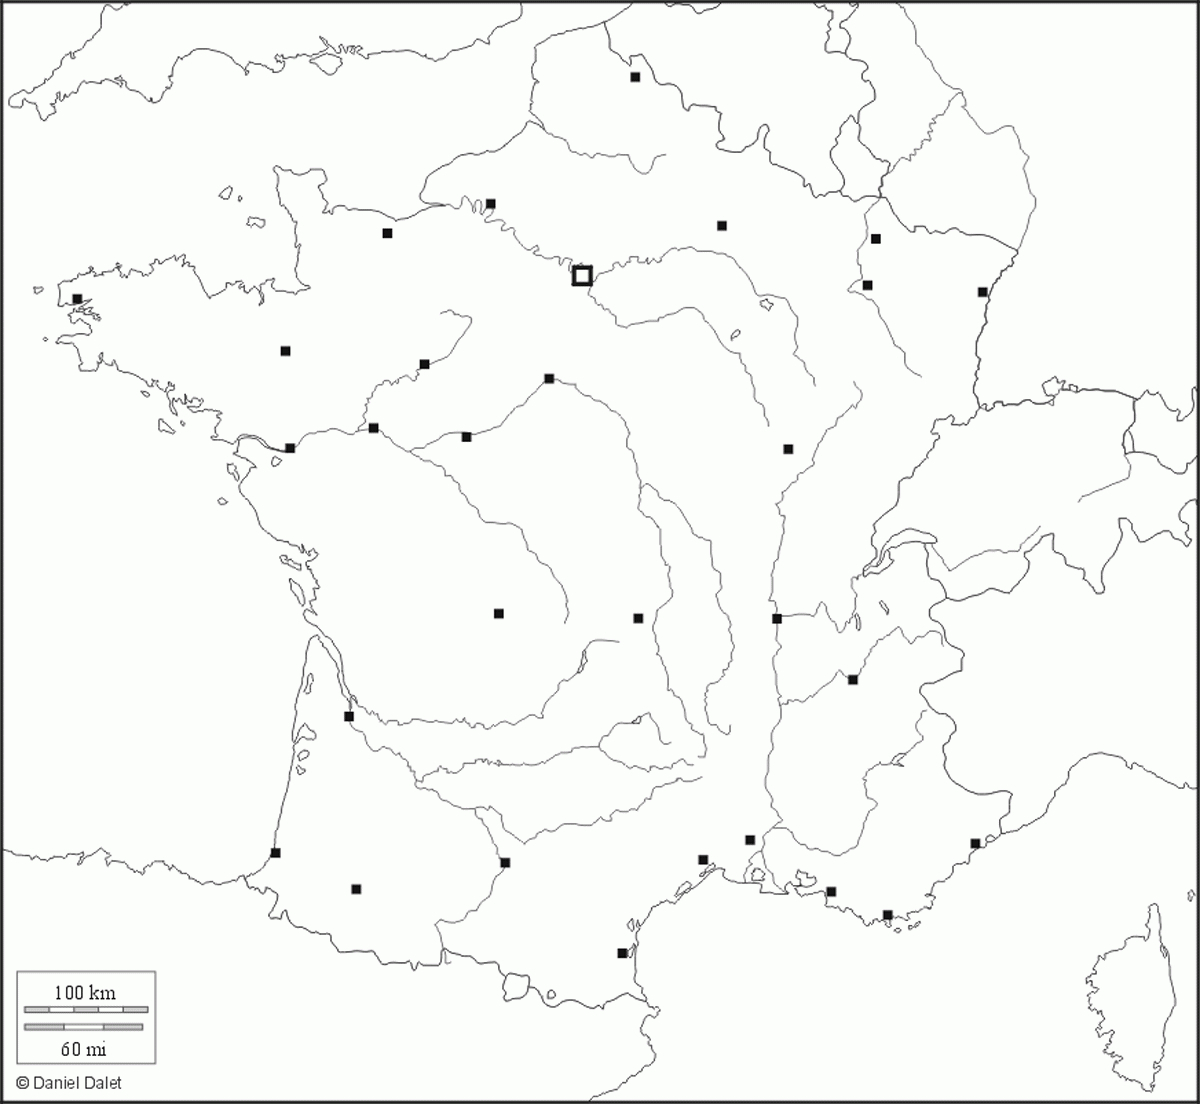 Fonds De Carte De France - Carte-Monde concernant Fond De Carte France Fleuves 